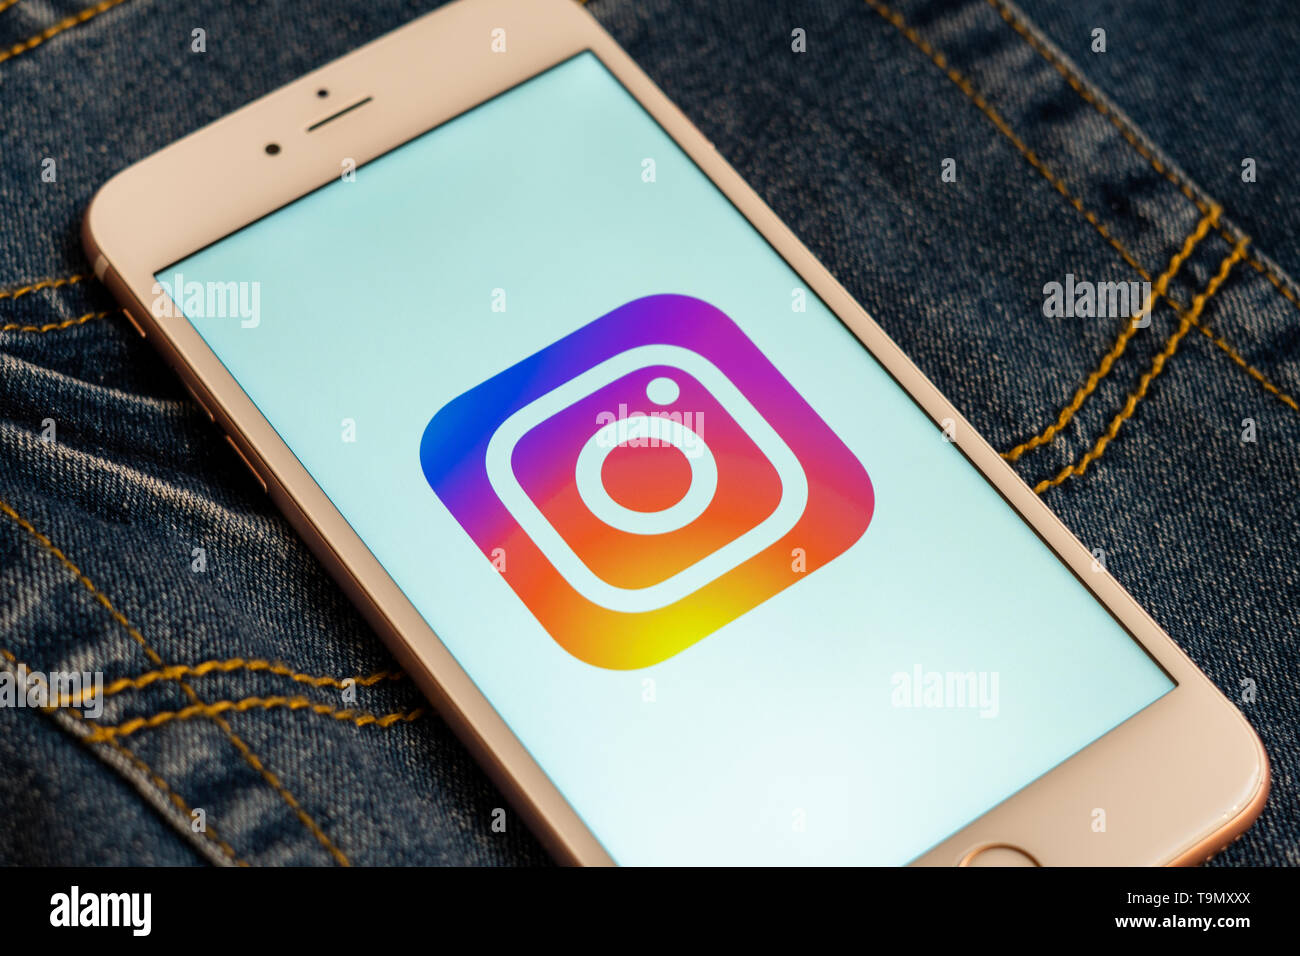 Instagram: Tận hưởng trải nghiệm trực tuyến tuyệt vời với Instagram. Tìm hiểu về những bức ảnh ấn tượng, video độc đáo và nhiều hơn nữa từ những người bạn mới trên trang web xã hội phổ biến này. Hãy truy cập vào đây để khám phá thế giới của Instagram!